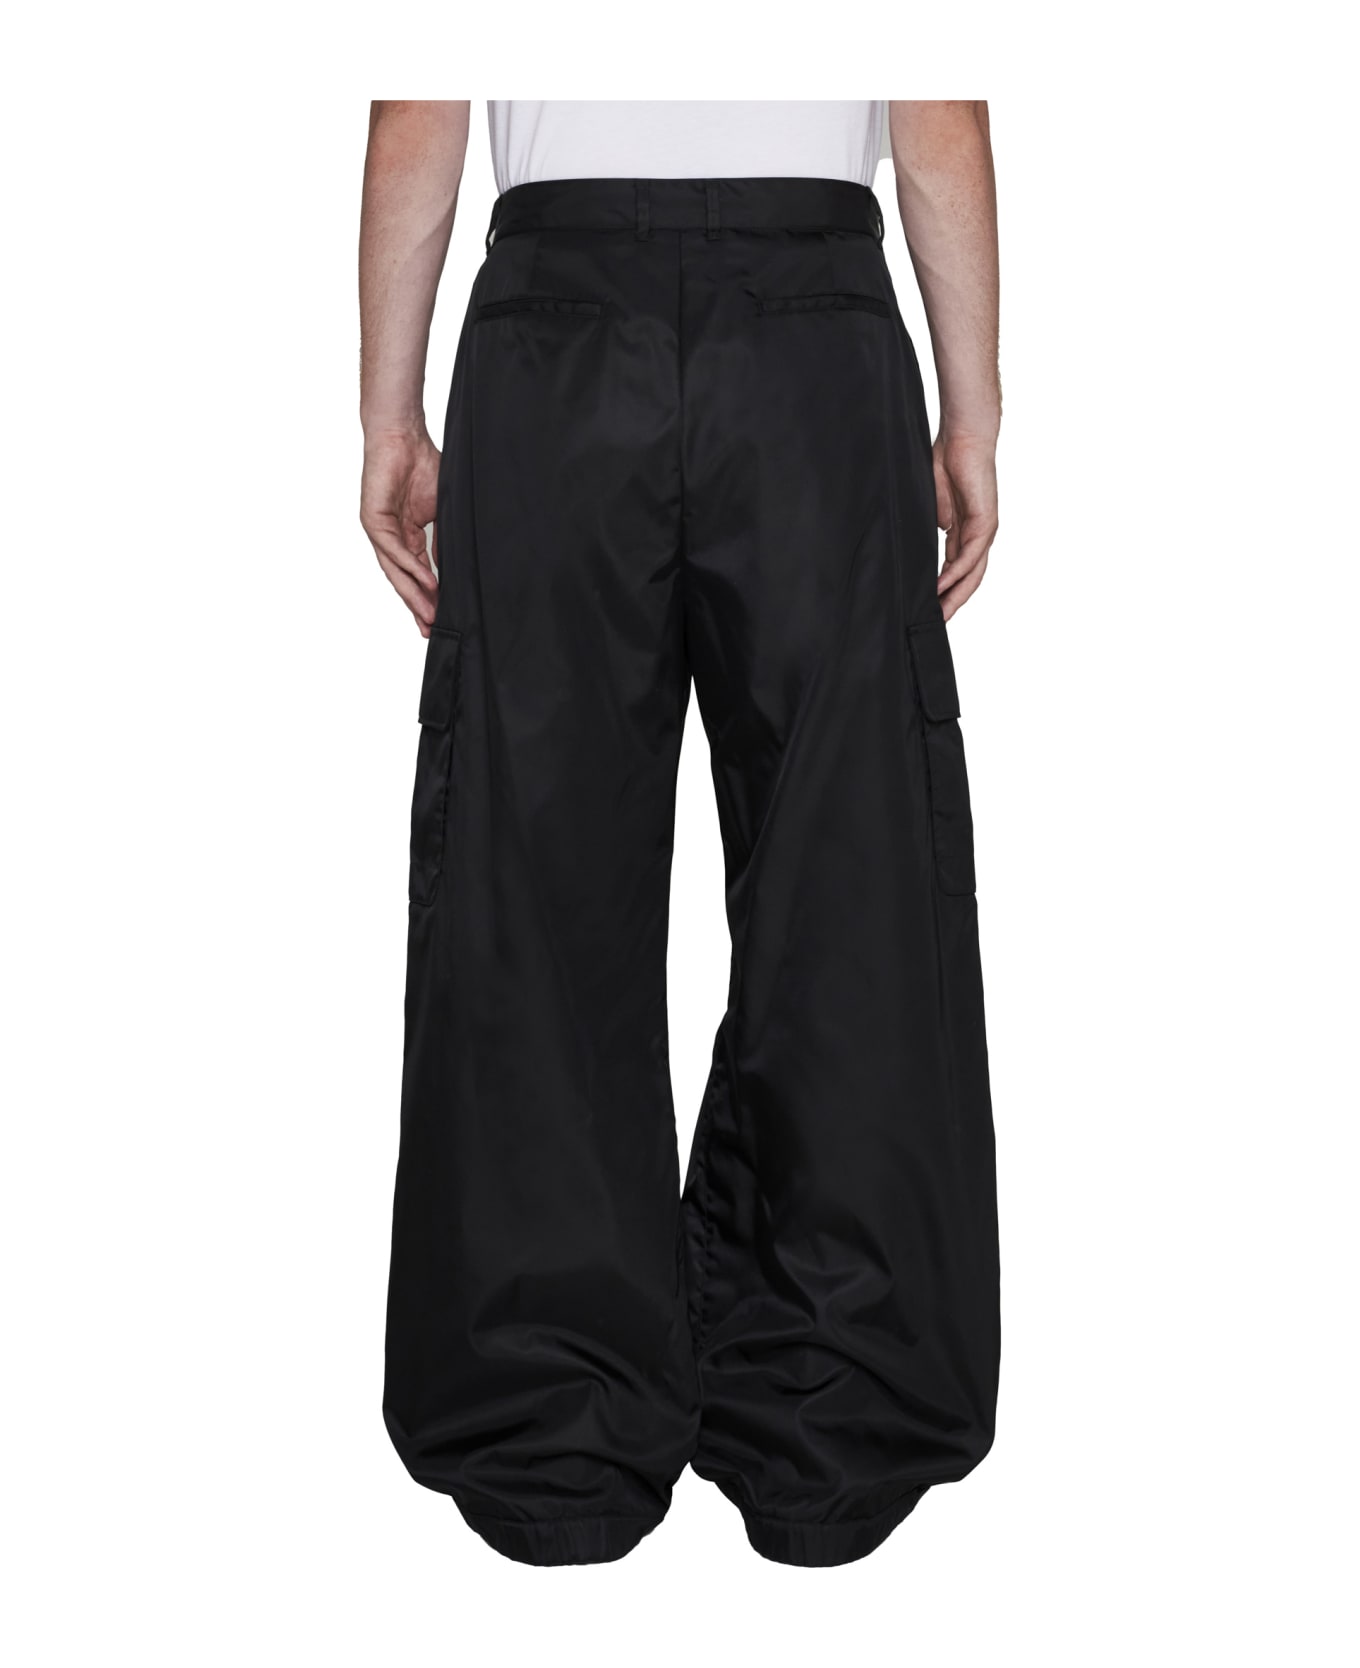 Off-White Nylon Cargo Pants - Black